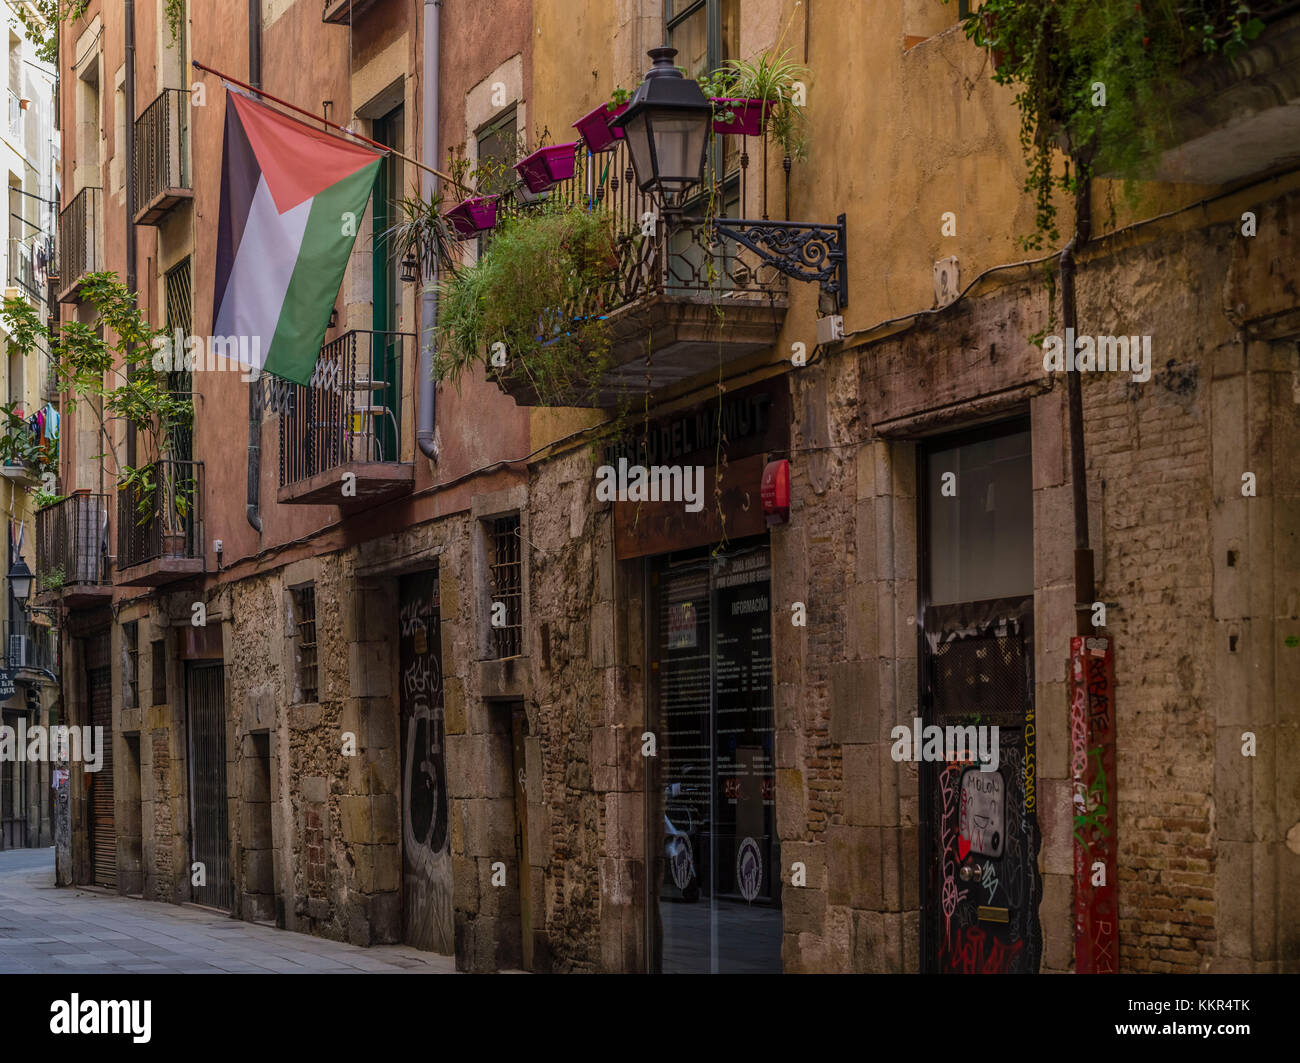 Vieille ville lane à Barcelone avec drapeau palestinien Banque D'Images